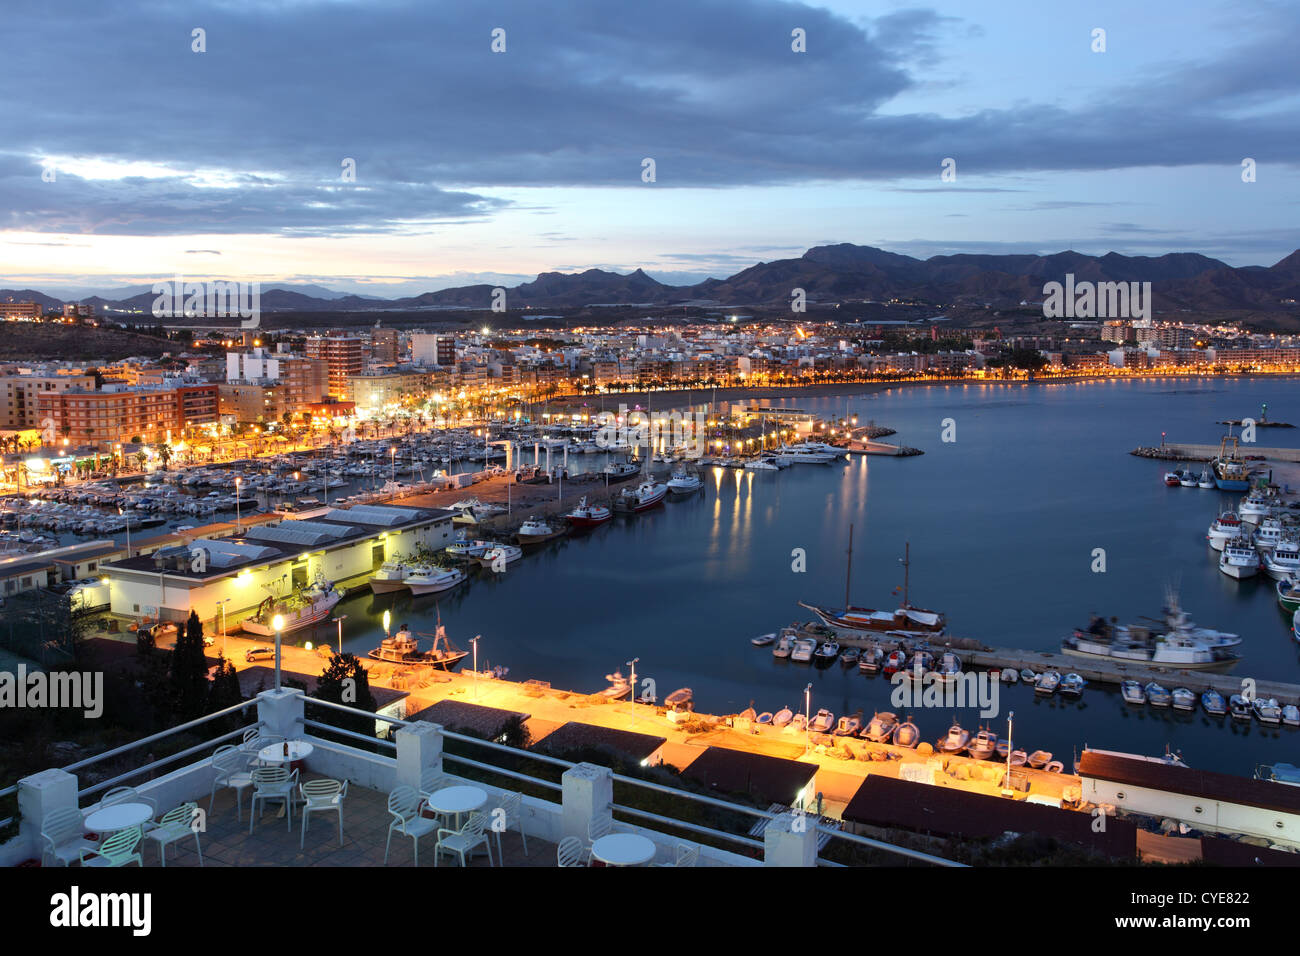 Puerto de Mazarron au crépuscule. Région Murcie, Espagne Banque D'Images